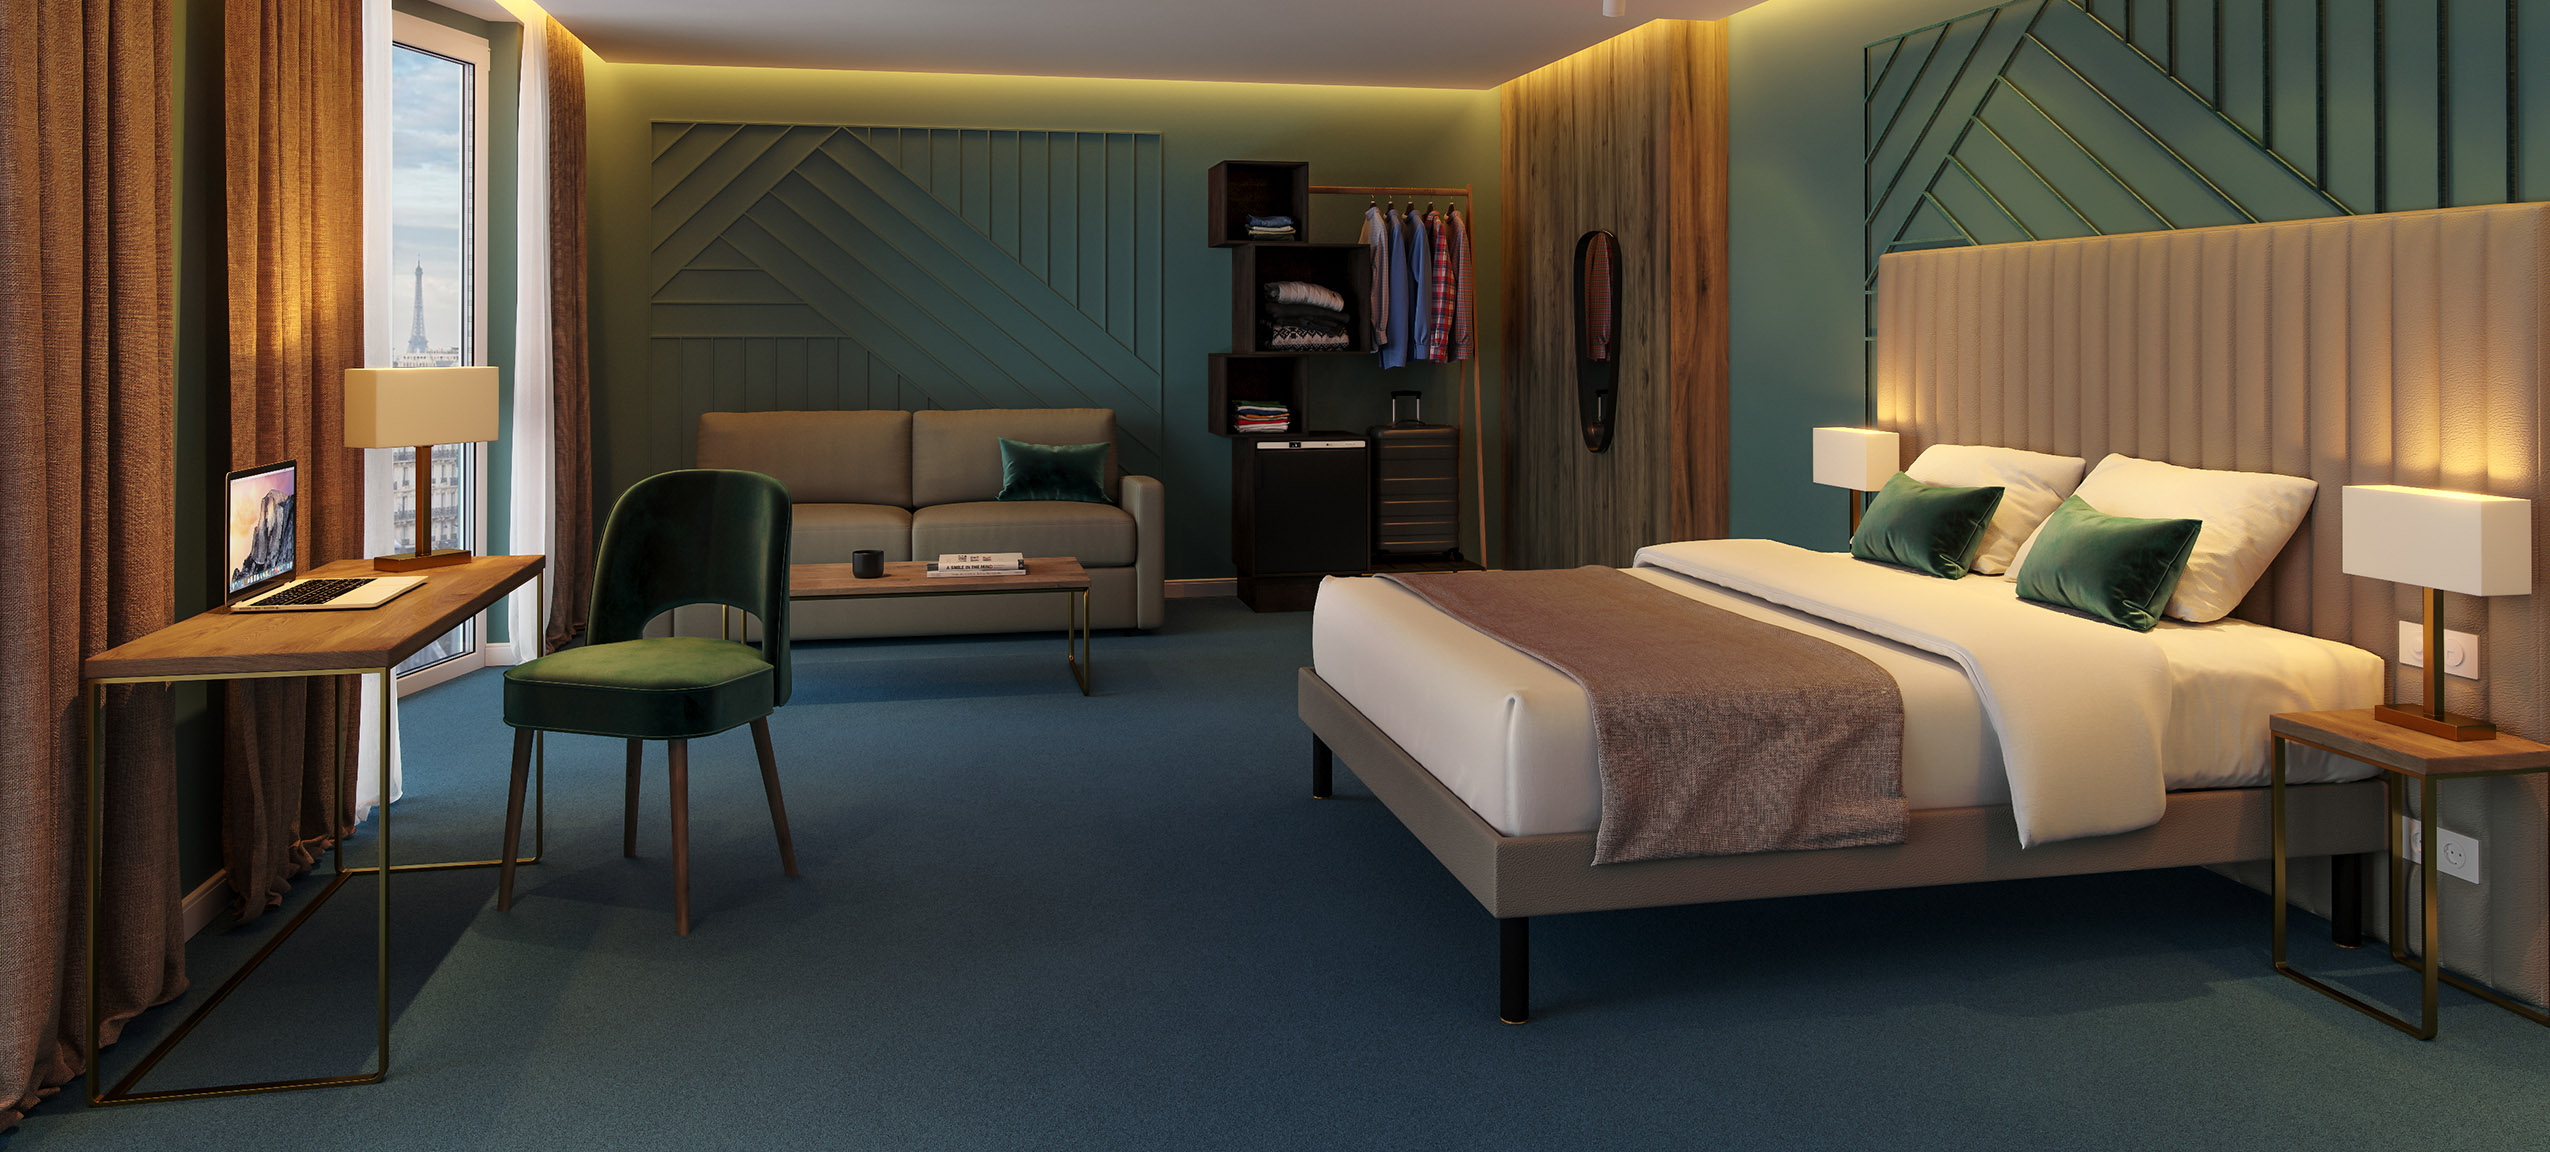 Chambre d'hôtel complète : tête de lit, chaise, dressing, bureau